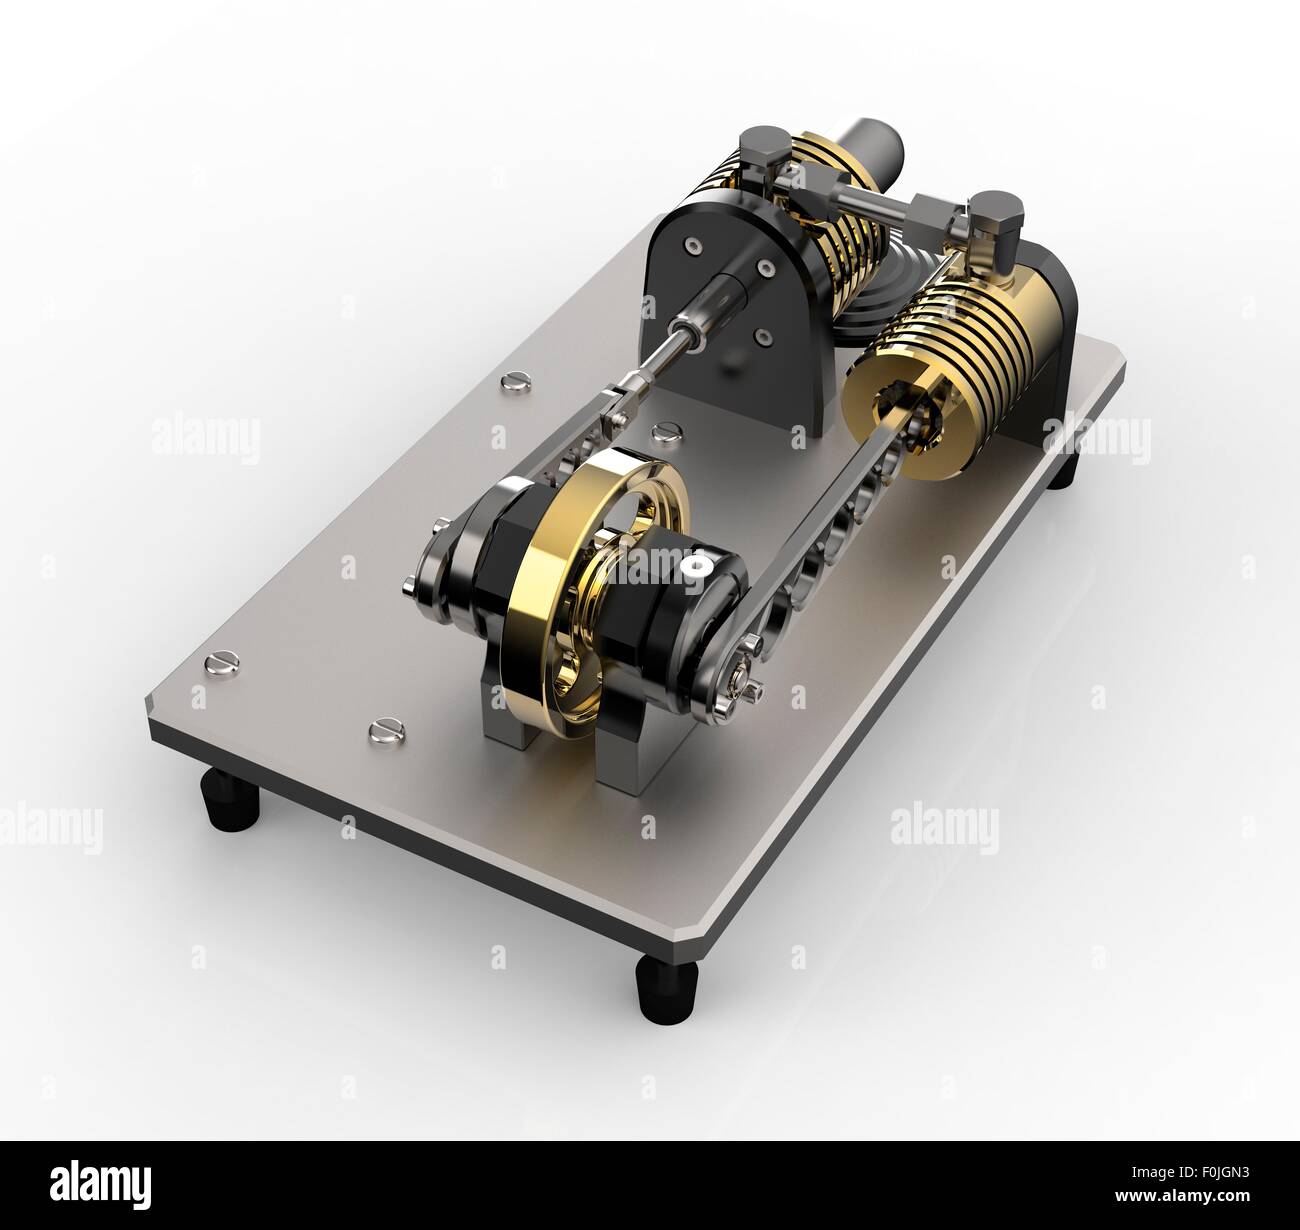 Stirling engine immagini e fotografie stock ad alta risoluzione - Alamy